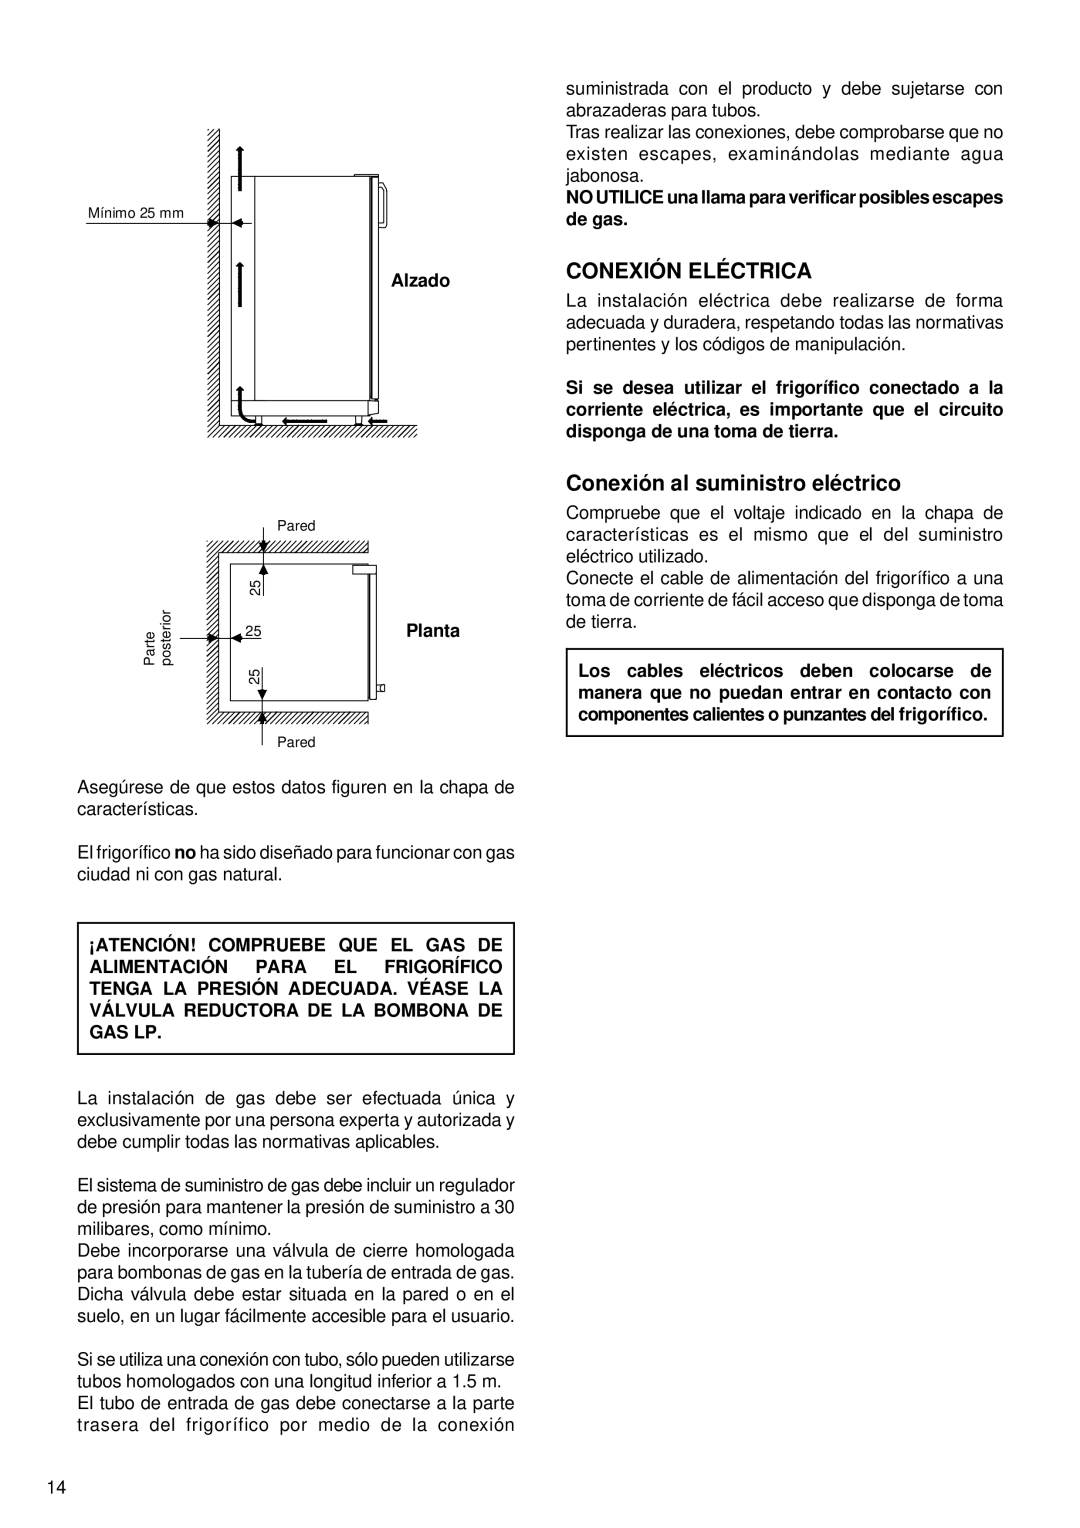 Sibir Optics RM 2-D, RM 1-D, RA 1-D, RA 2-D manual Conexión Eléctrica, Conexión al suministro eléctrico 